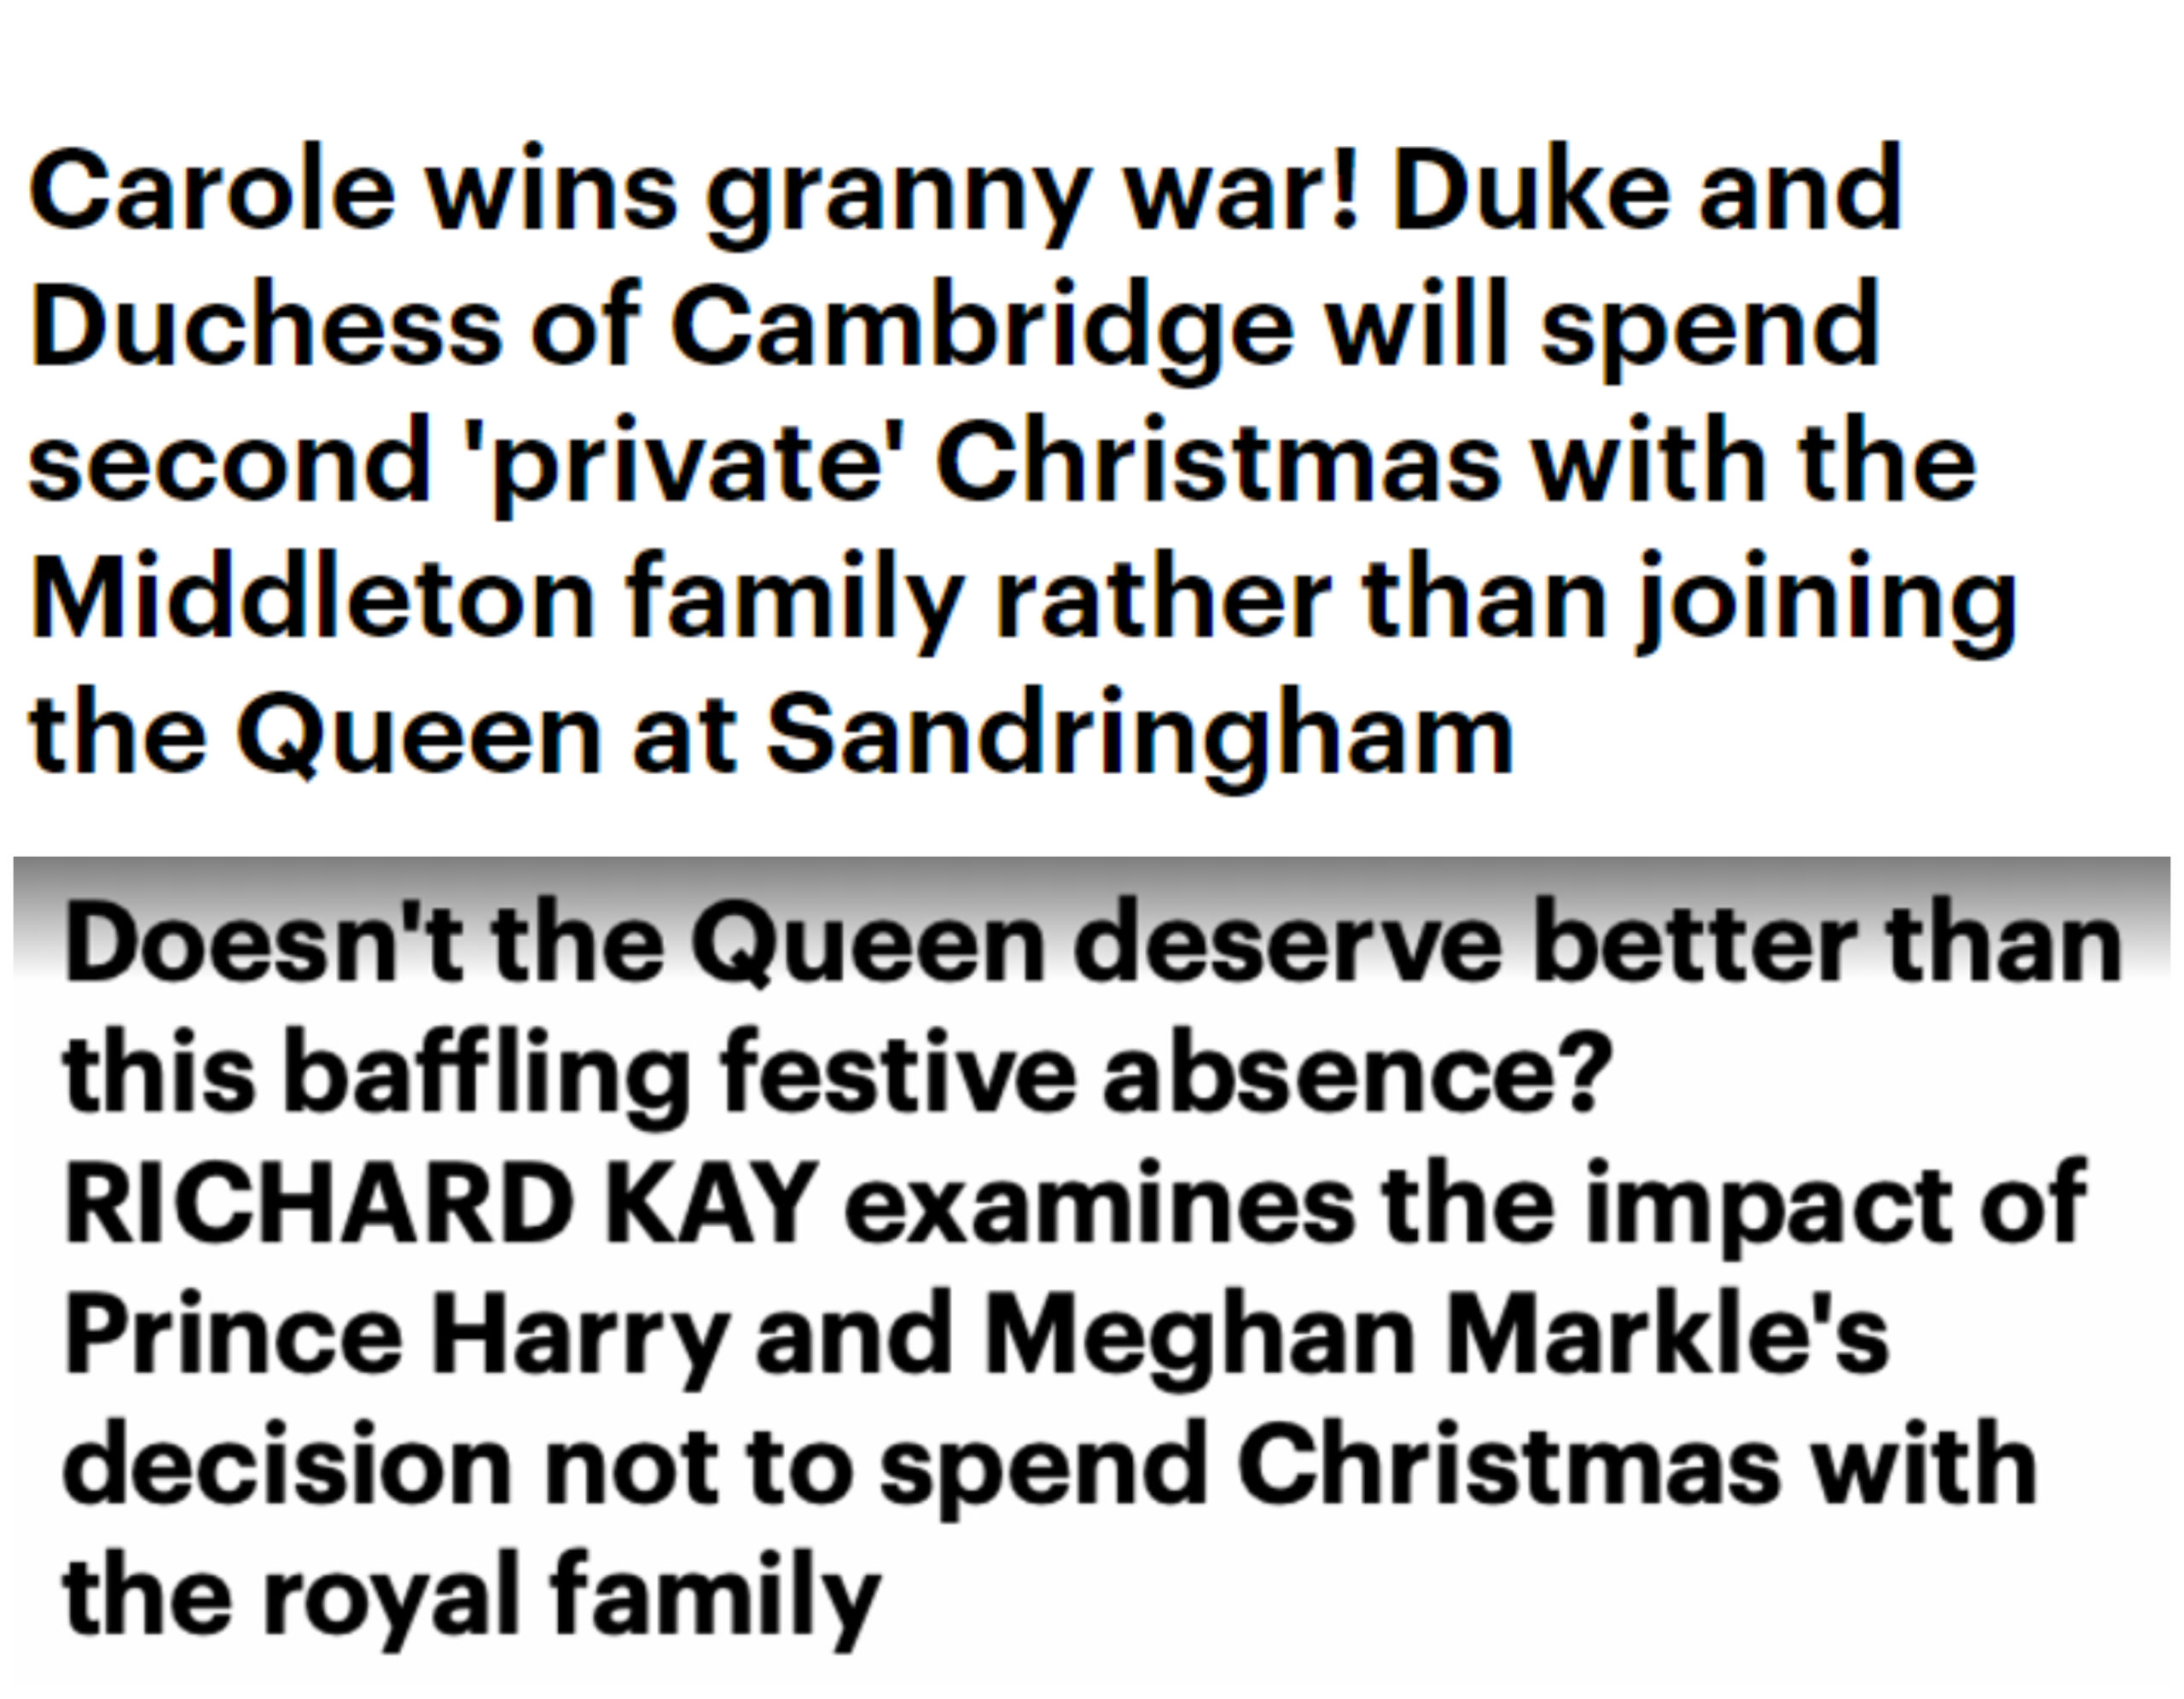 Kada su William i Kate 2016. proveli Božić s njezinom obitelji umjesto s kraljicom Daily Mail ih je hvalio. Pisali su kako su odlučili provesti <a href="https://www.dailymail.co.uk/news/article-4041542/Duke-Duchess-Cambridge-spend-private-Christmas-Middleton-family-joining-Queen-Sandringham.html/"><b><u>"privatan Božić"</u></b></a>  u krugu Kateine obitelji te da kraljica to podržava. Kada su istu stvar napravili Harry i Meghan pisali su da kraljica zaslužuje bolje te su <a href="https://www.dailymail.co.uk/news/article-7682945/The-impact-Prince-Harry-Meghan-Markles-decision-not-spend-Christmas-royal-family.html/"><b><u>analizirali posljedice</u></b></a> njihove odsutnosti.